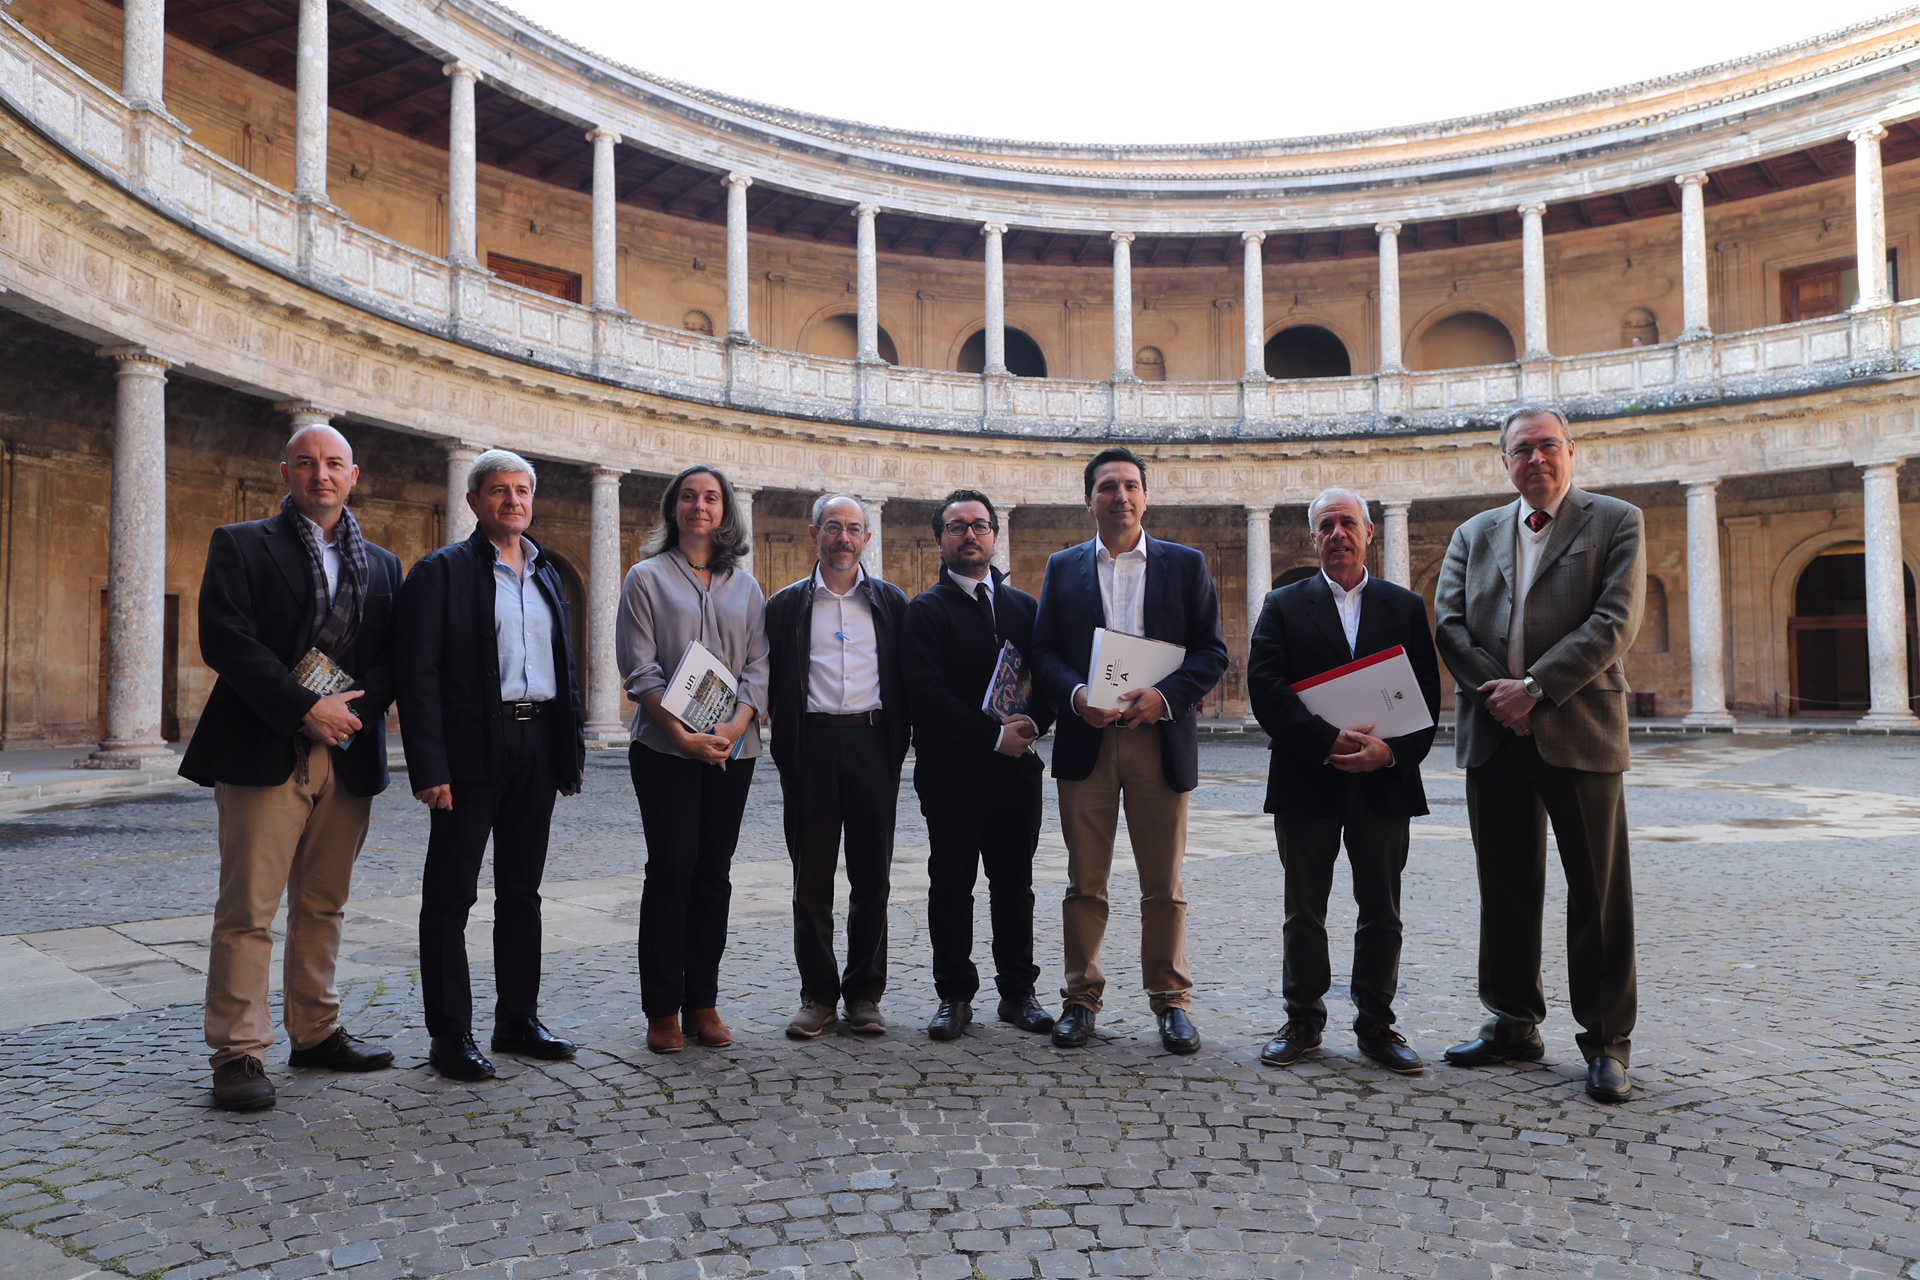 La ciencia y la tecnología en la restauración de la Alhambra, a debate en el Palacio de Carlos V